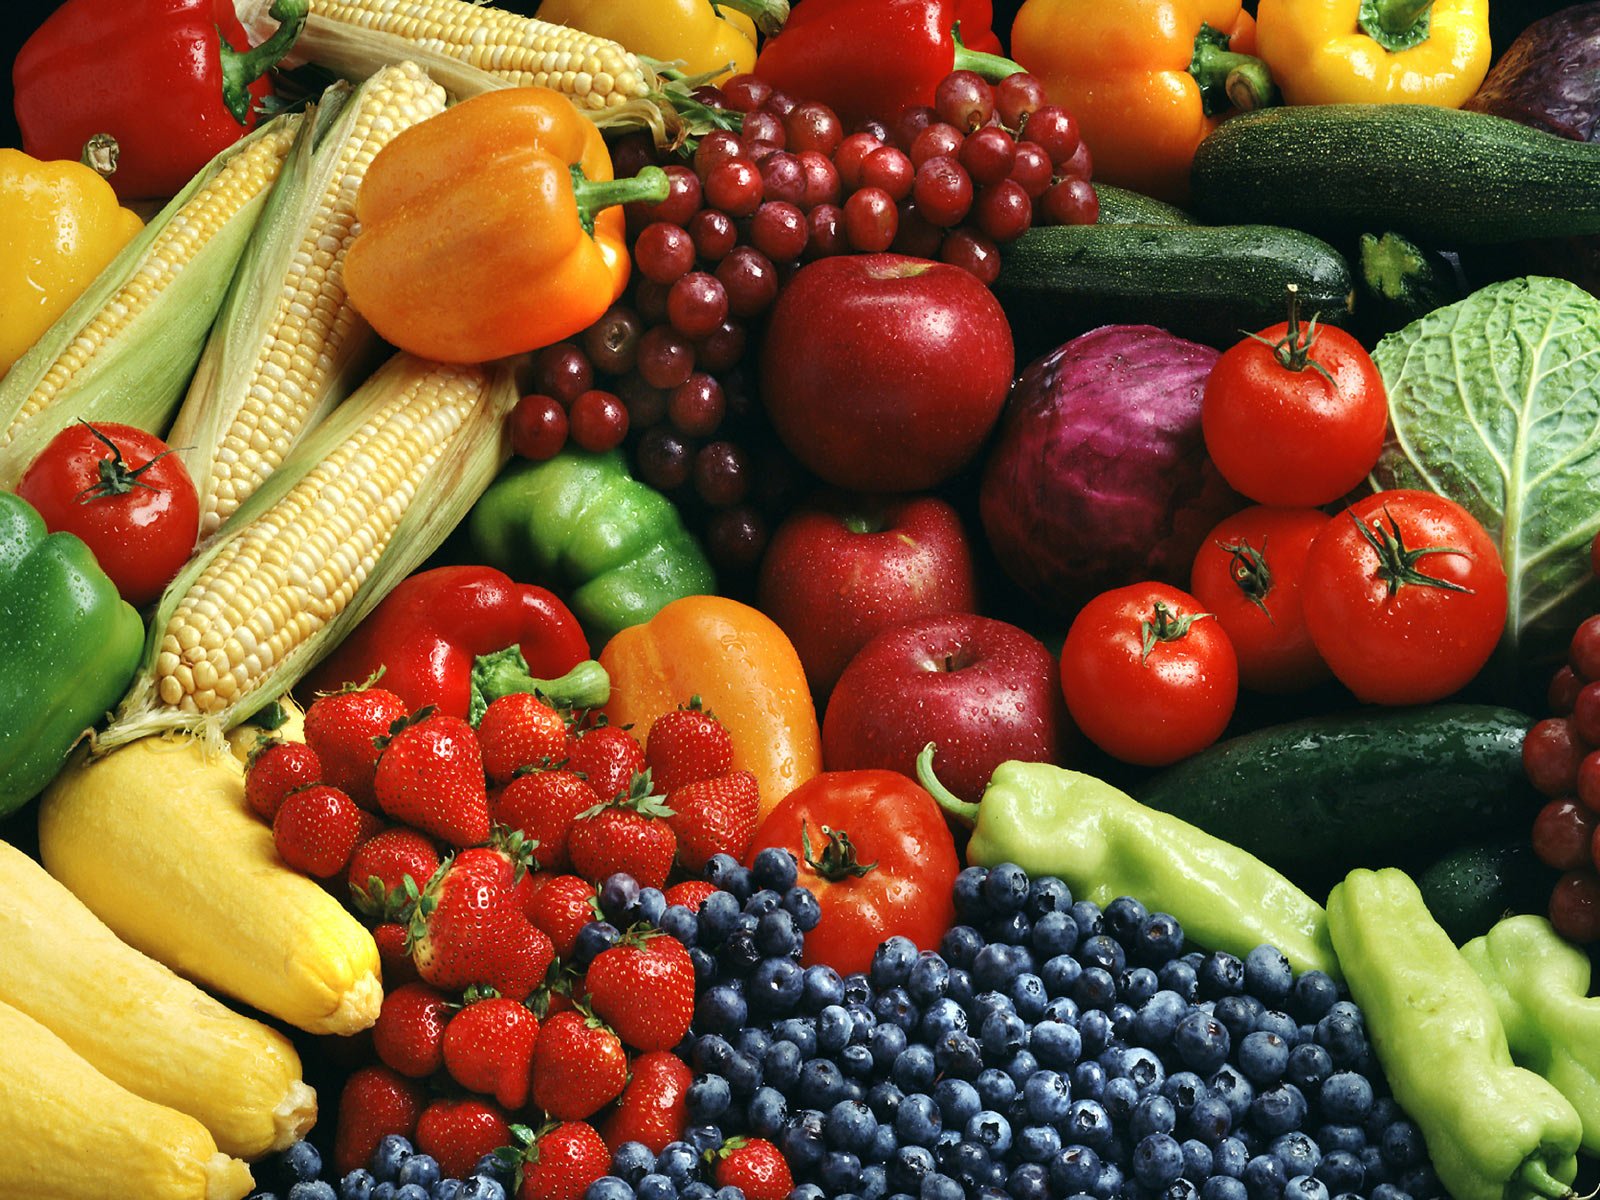 أخصائية تغذية تدحض "أسطورة" لون الخضروات والفواكه الأكثر صحة